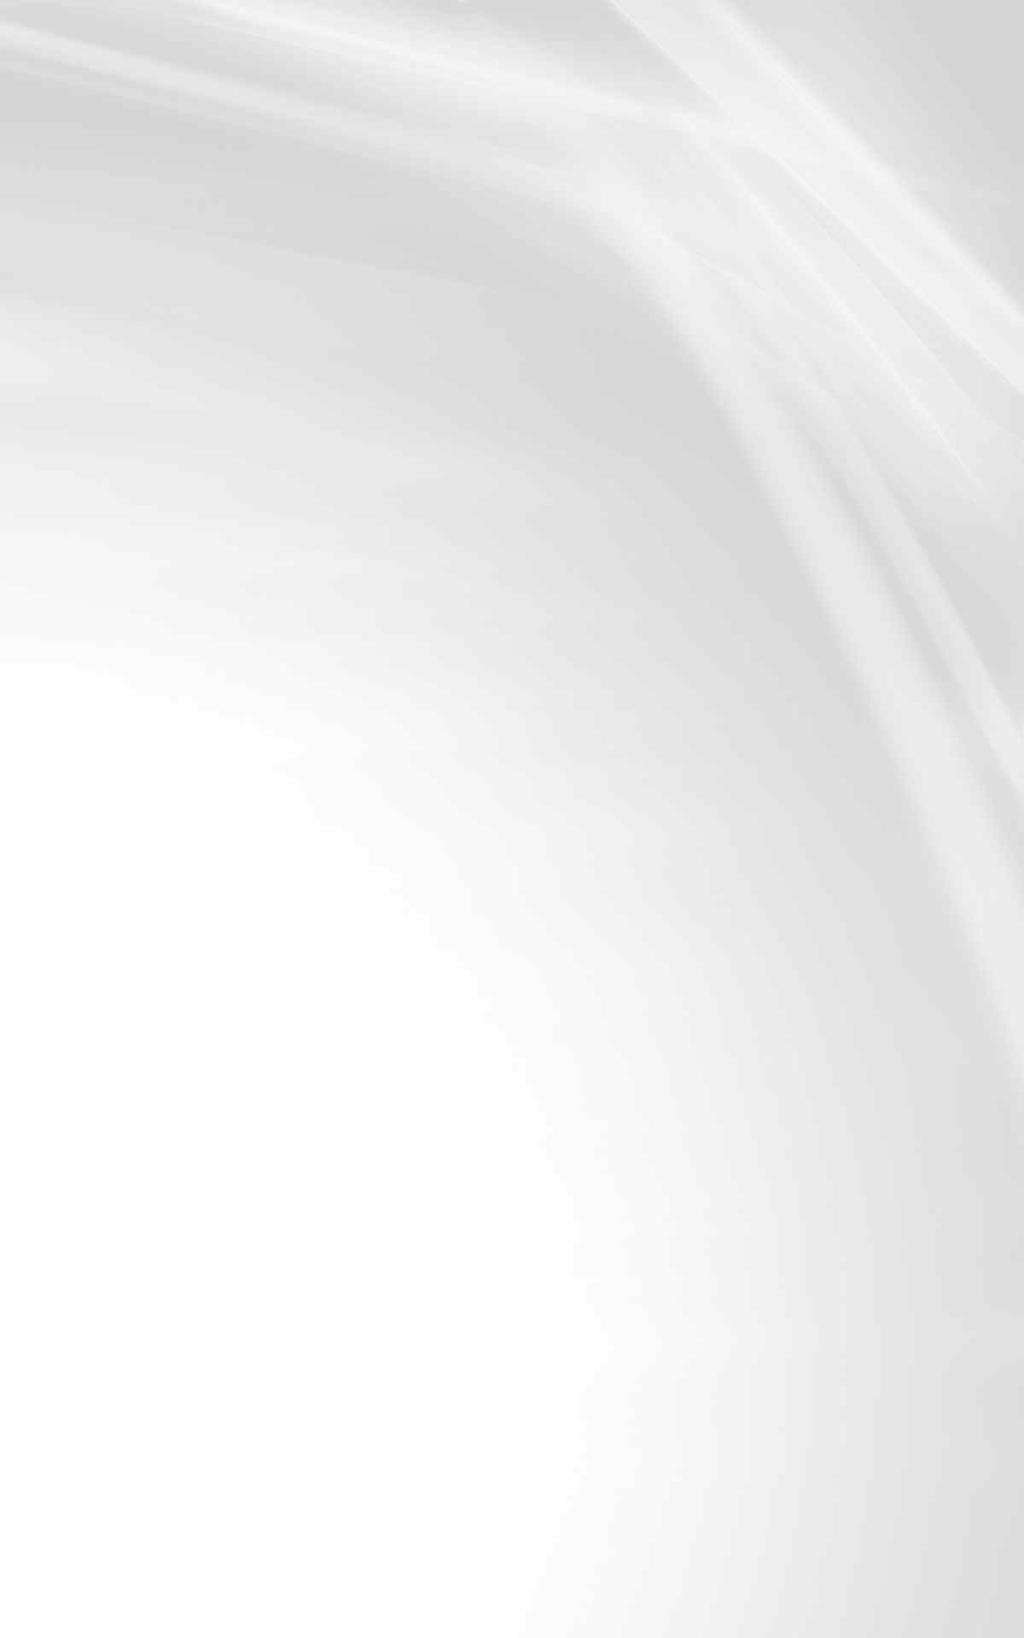 18 NOVOHRADSKÝ ZPRAVODAJ únor 2018 Novohradská galerie Koželužna zve na výstavu Fotografie tance z Číše Ohlédnutí za čtyřicetiletou historií